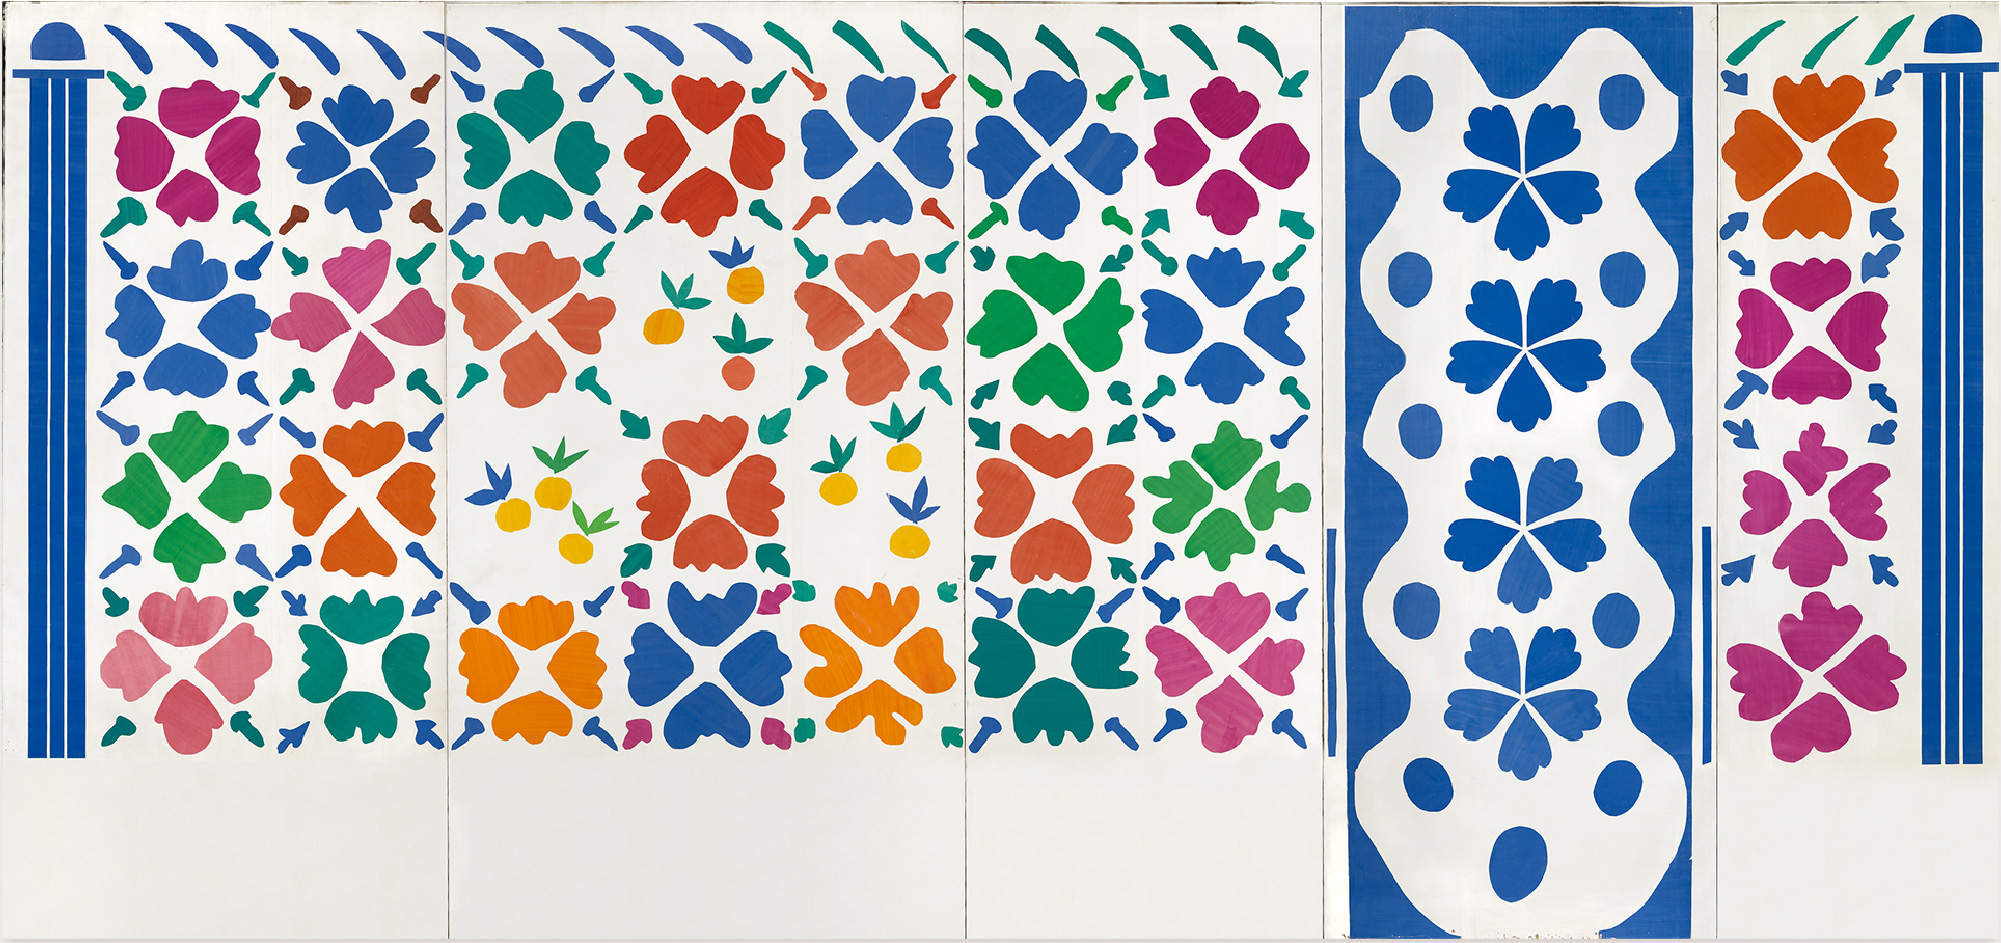 アンリ・マティス《花と果実》1952-1953年 切り紙絵、410 × 870 cm、ニース市マティス美術館蔵 © Succession H. Matisse　Photo: François Fernandez